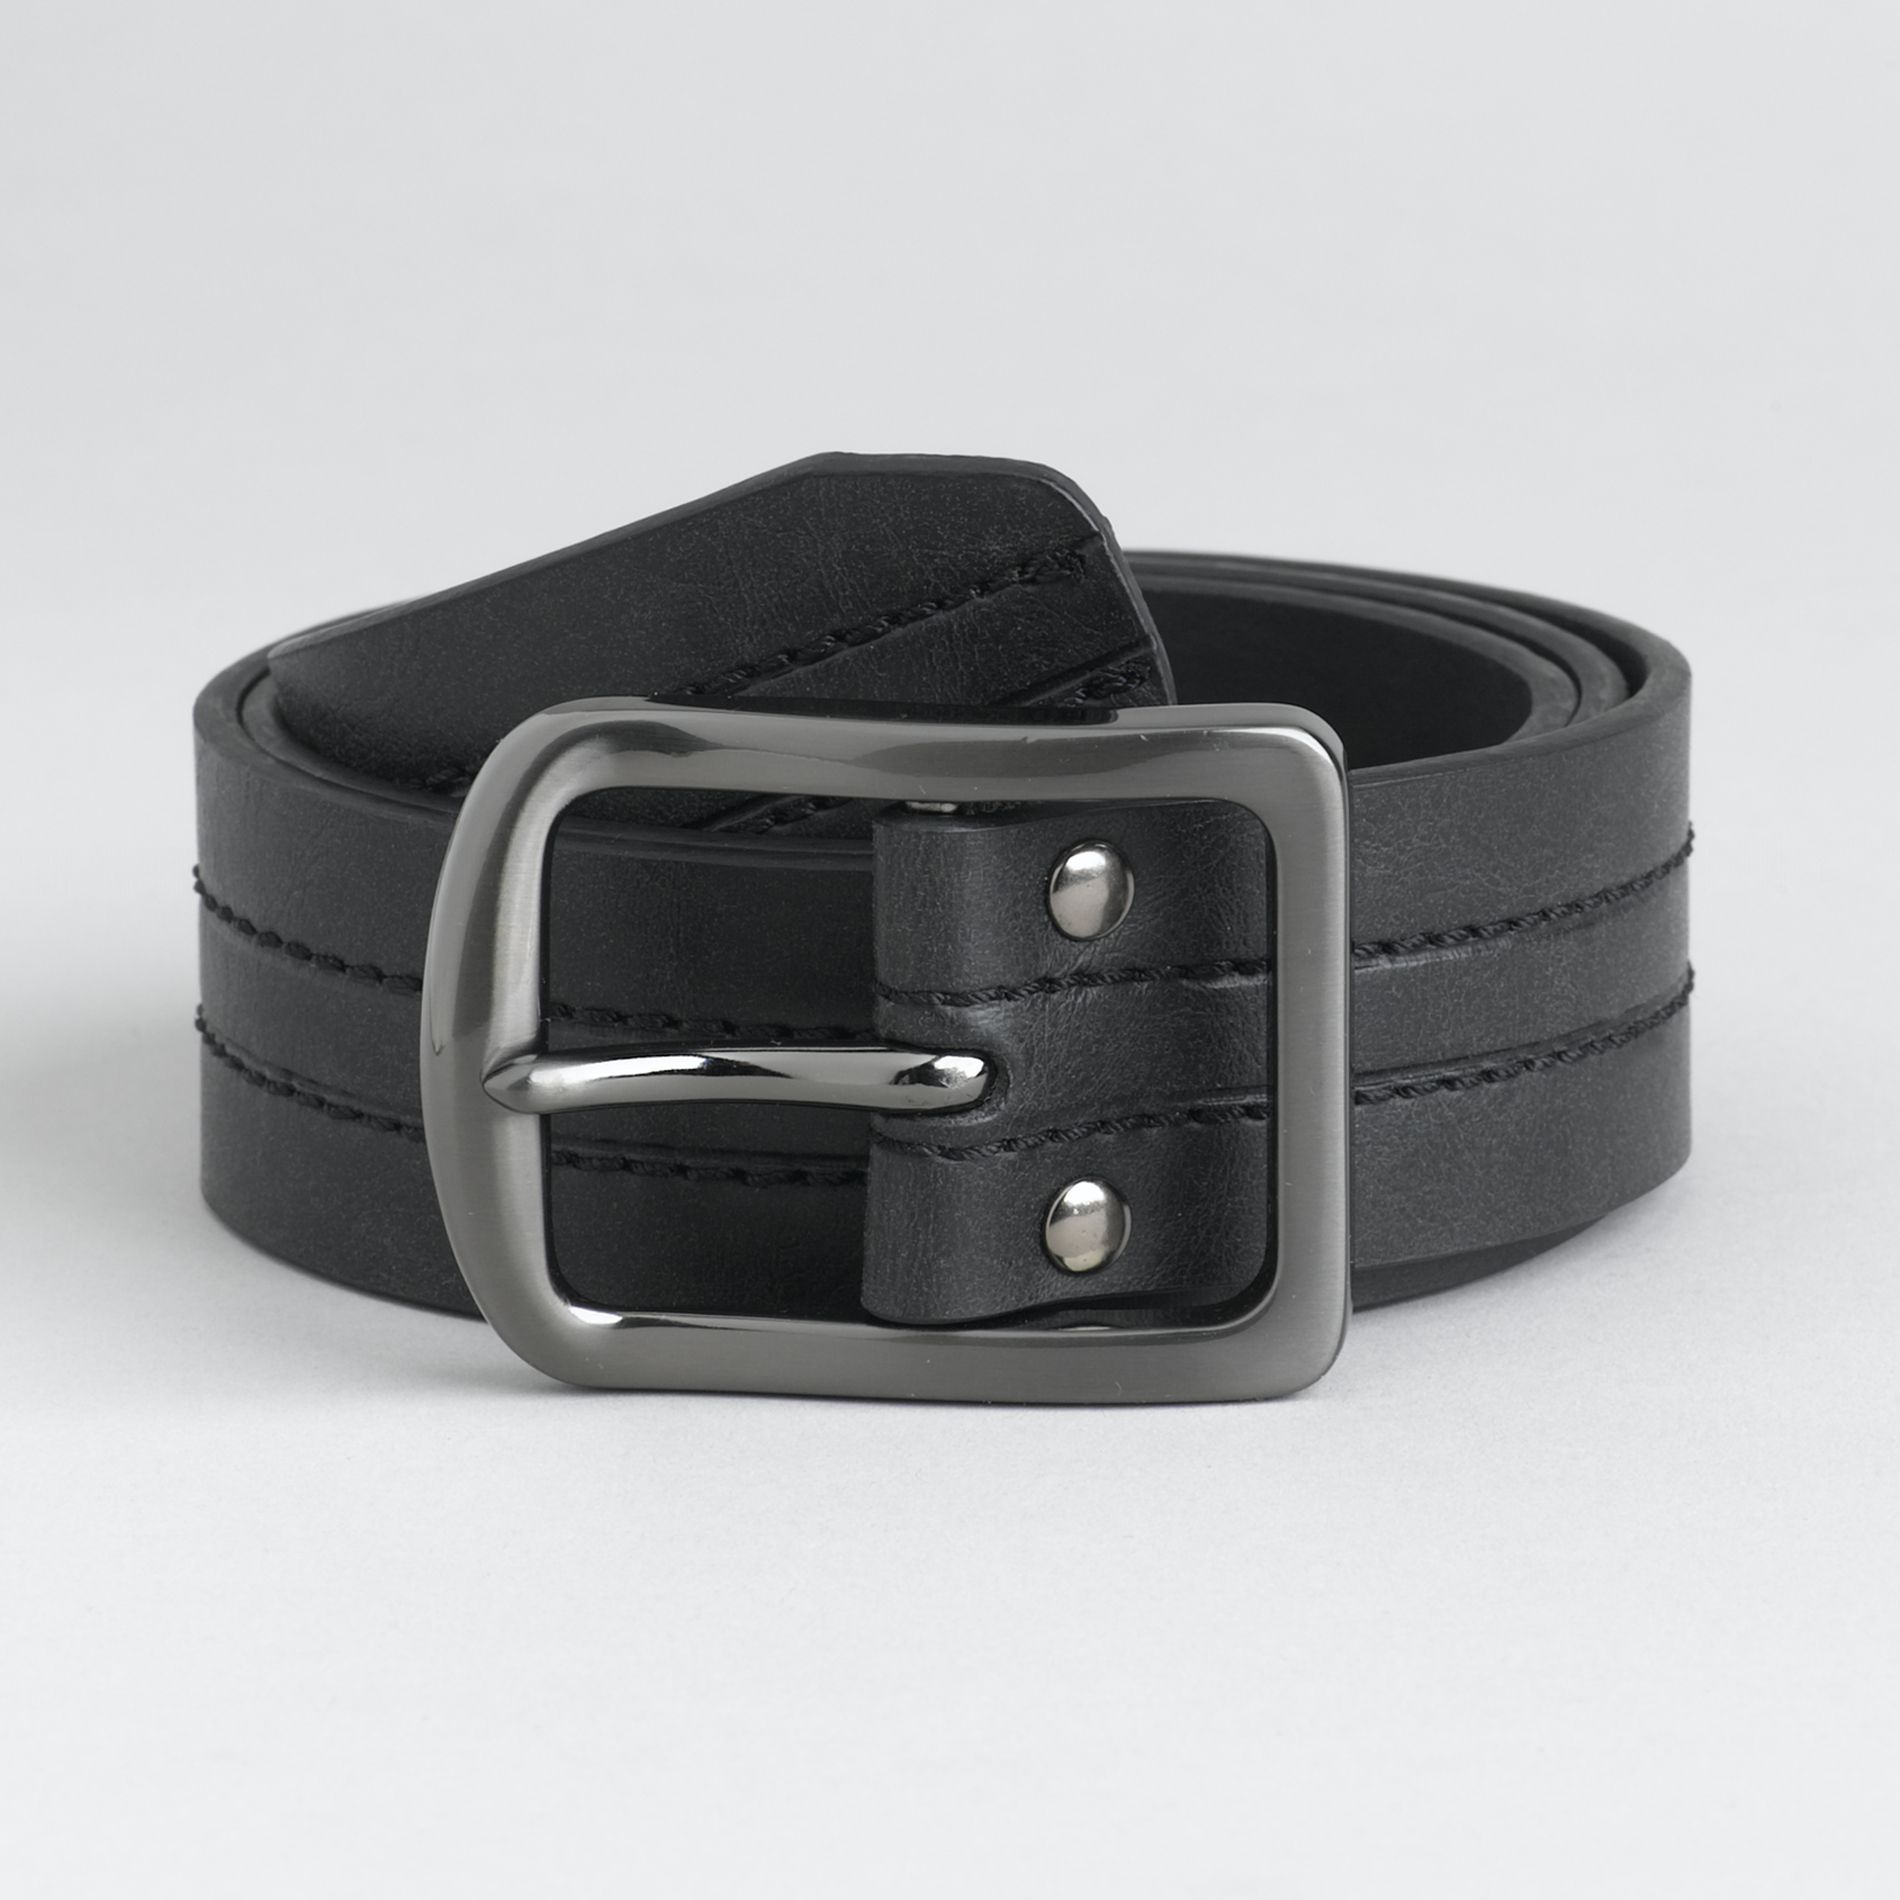 Genuine Dickies Men's Casual Leather Belt